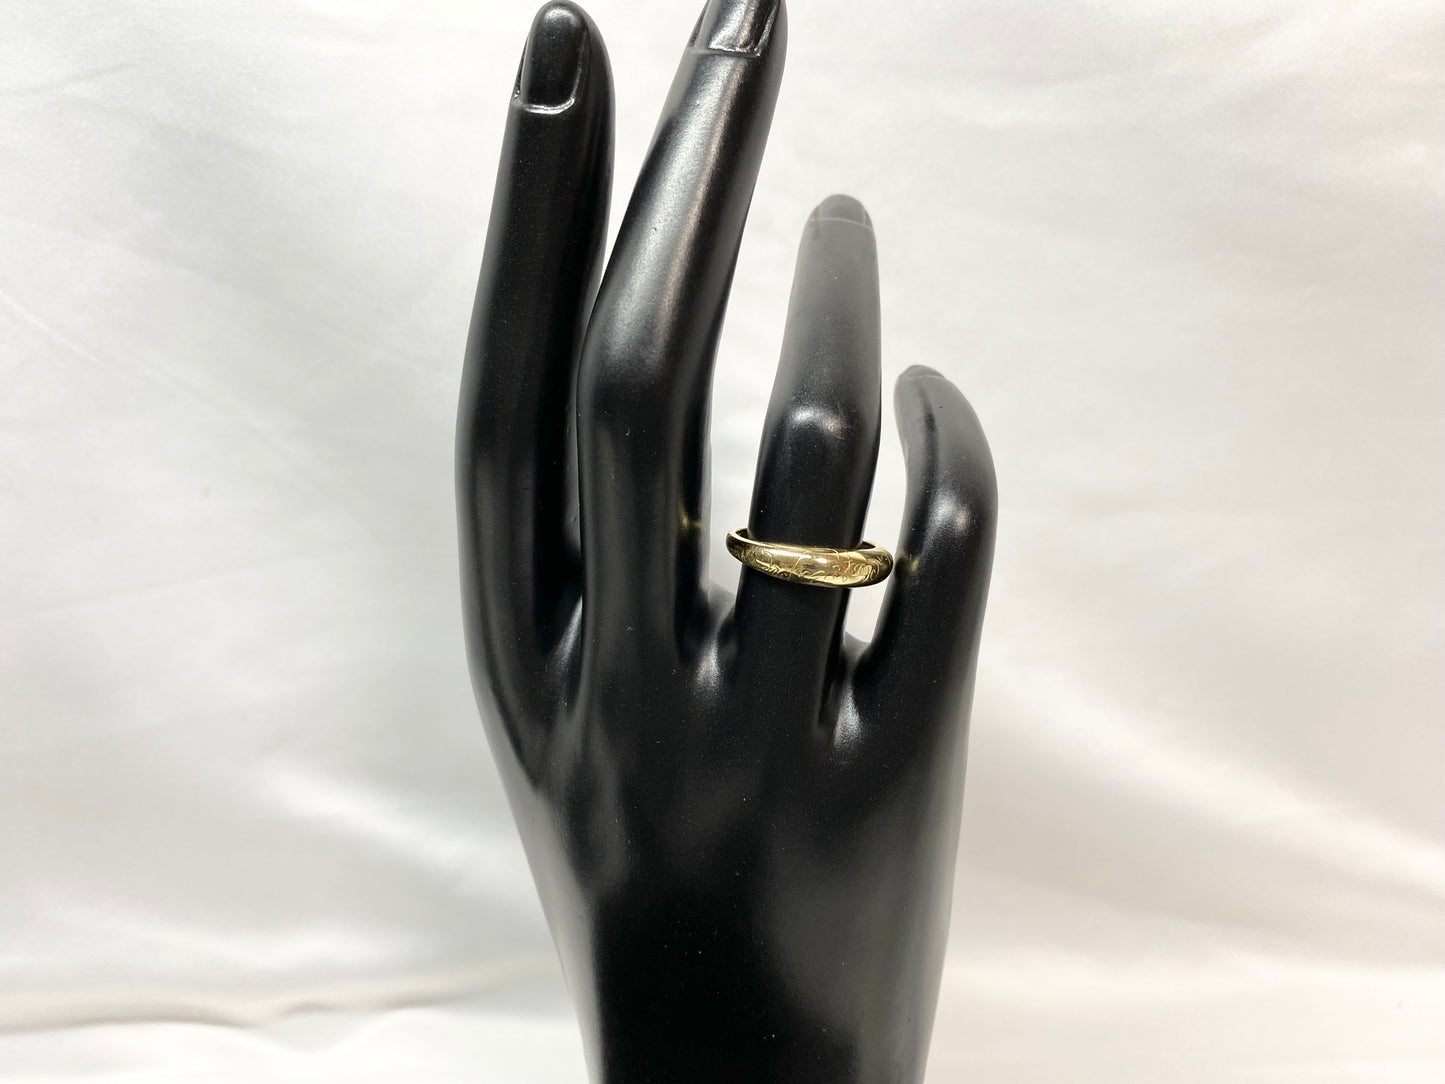 Van Cleef & Arpels Van Cleef & Arpels Senior Couture Ring #12 K18KT